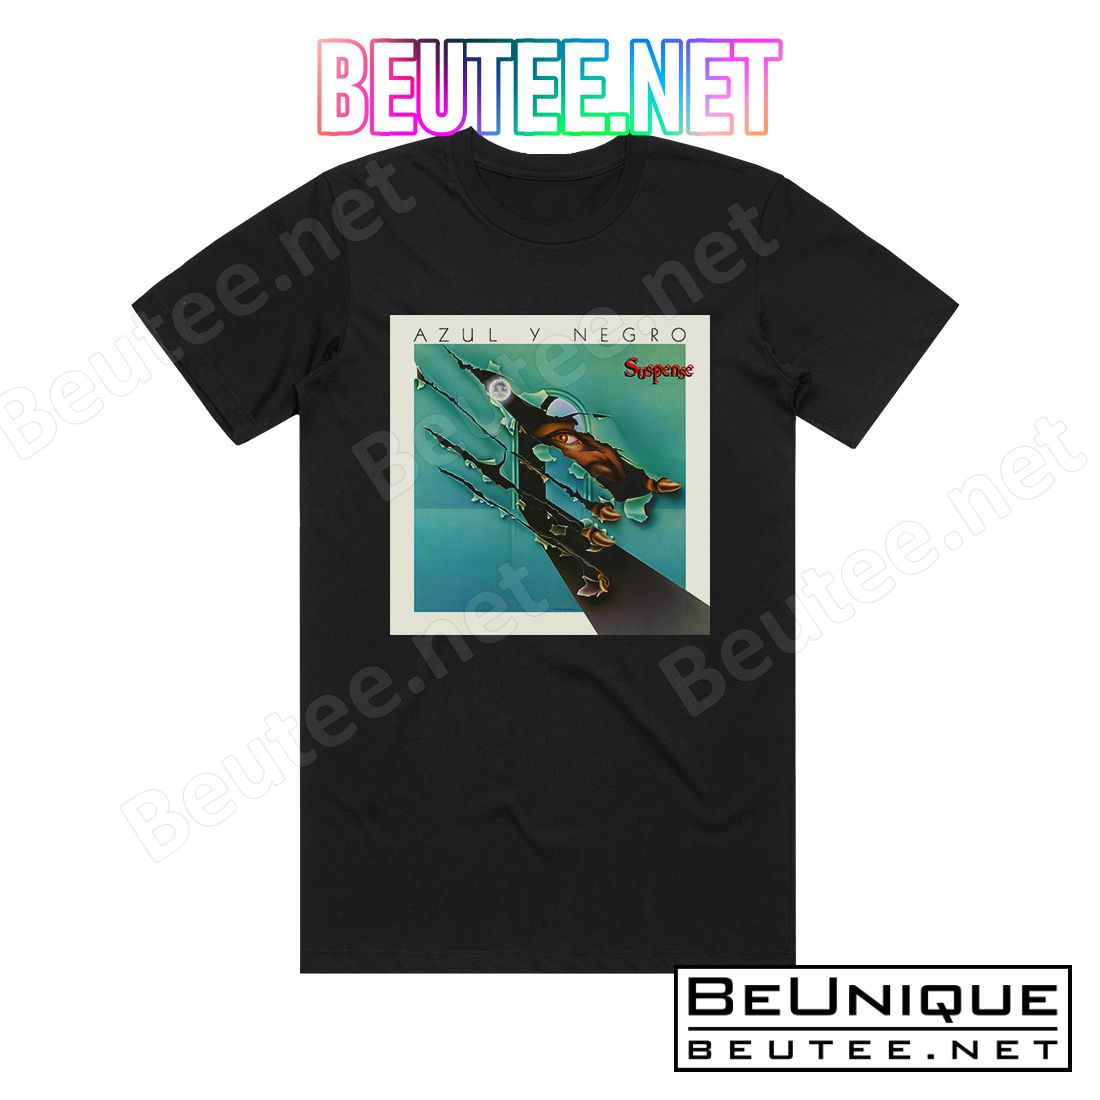 Azul y Negro Suspense Album Cover T-Shirt